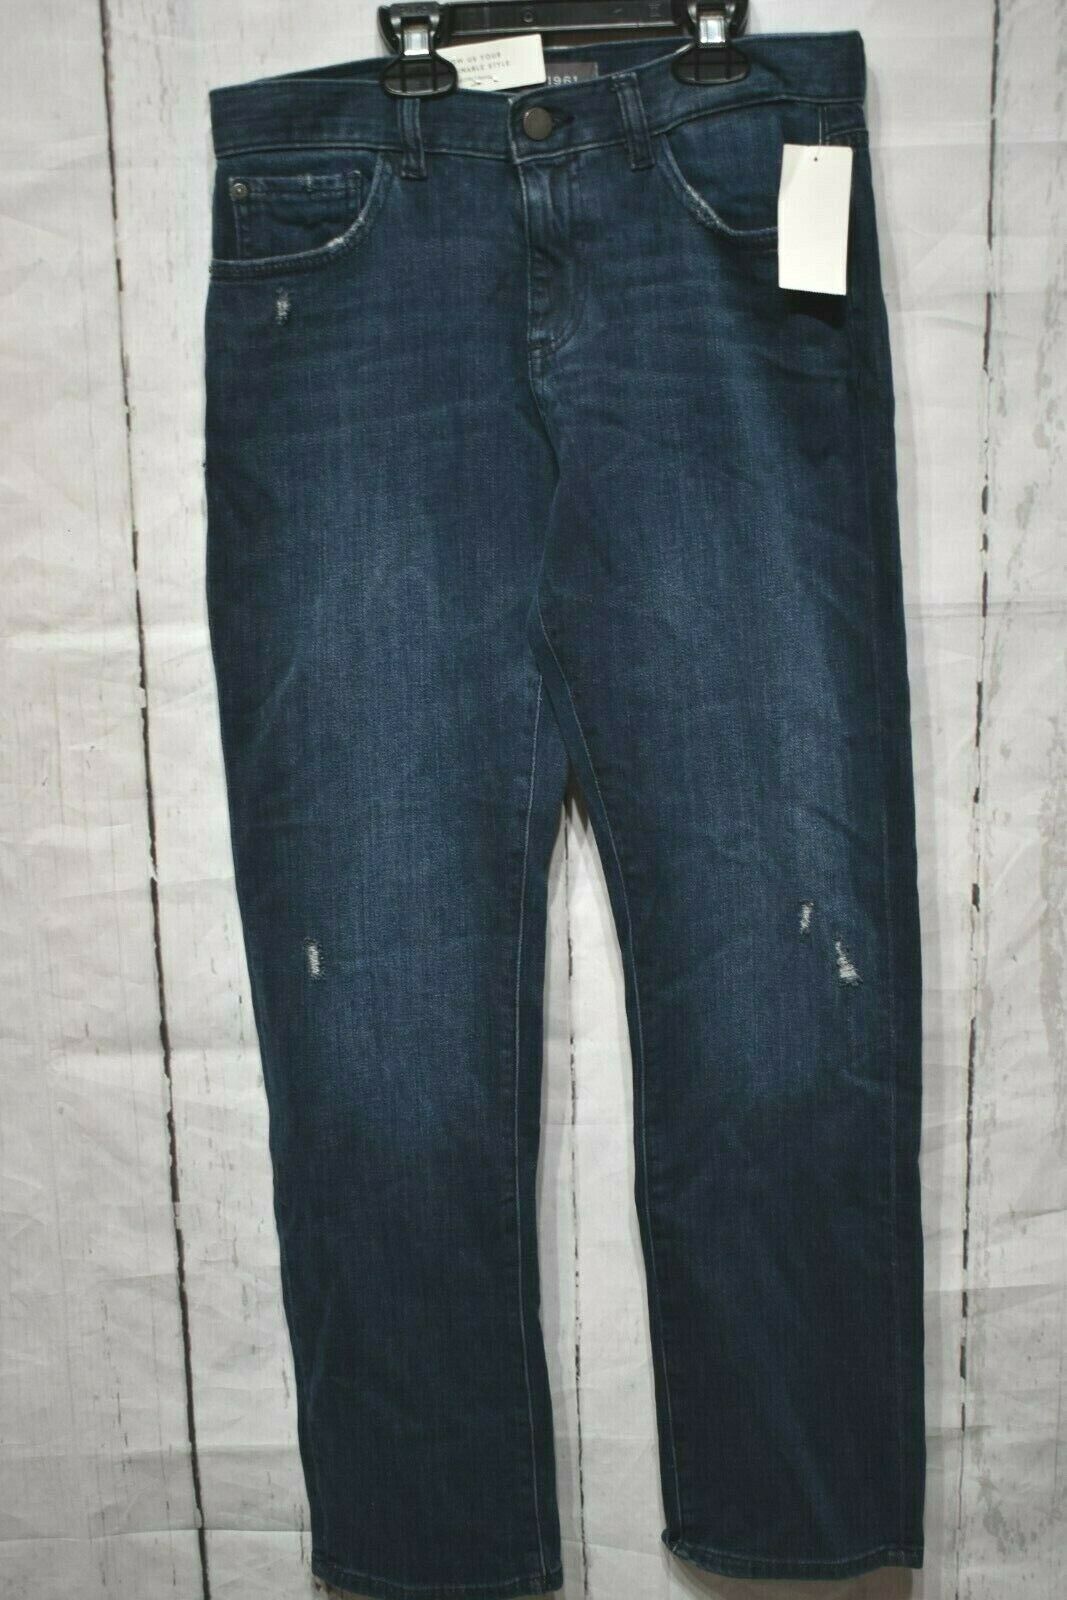 DL1961 Boys' Brady Slim Straight Jeans - Big Kids Size 16 - Jeans